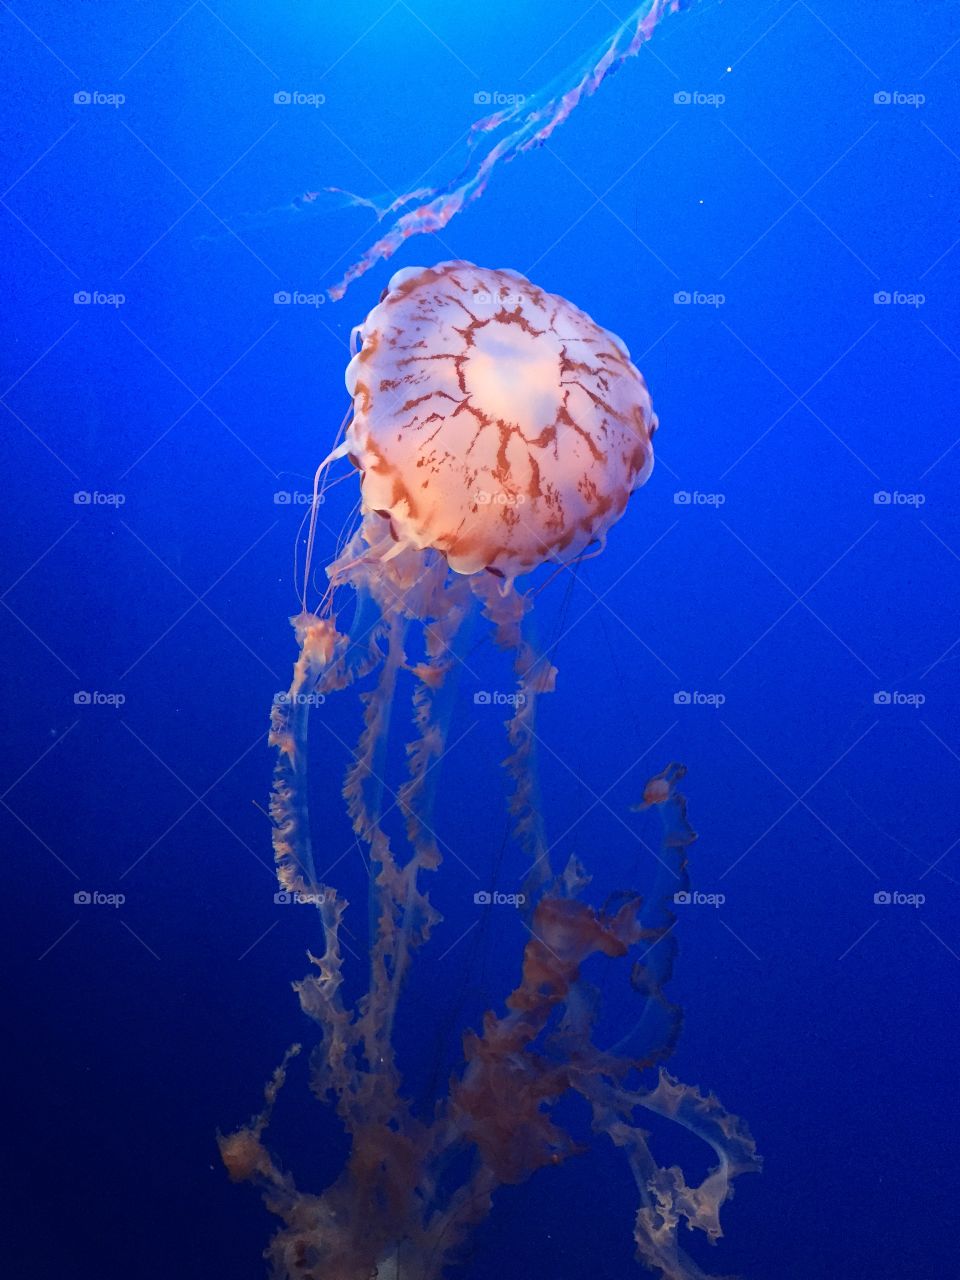 Jellyfish center stage 